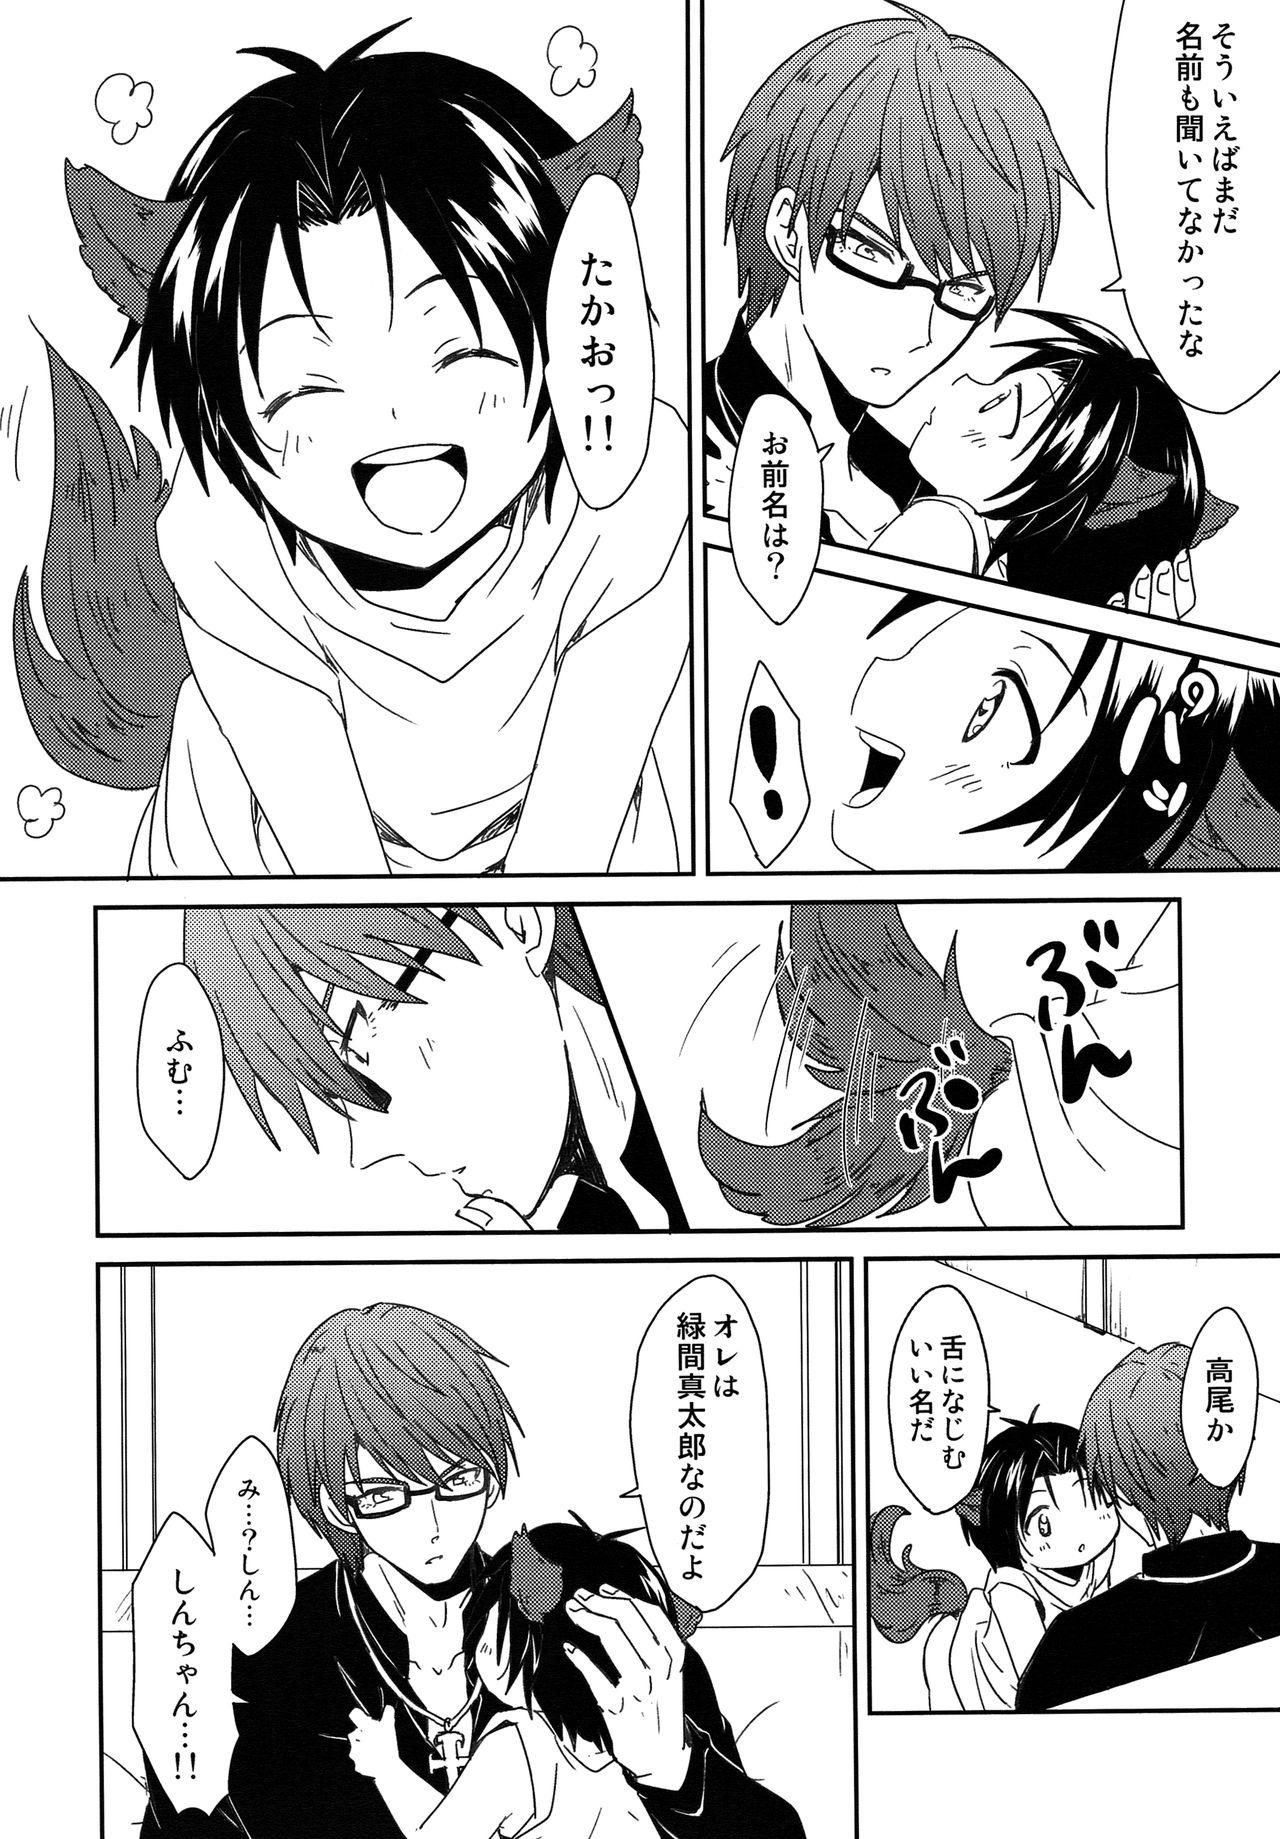 Gayporn Shinpu-sama no Meinu - Kuroko no basuke Facials - Page 11